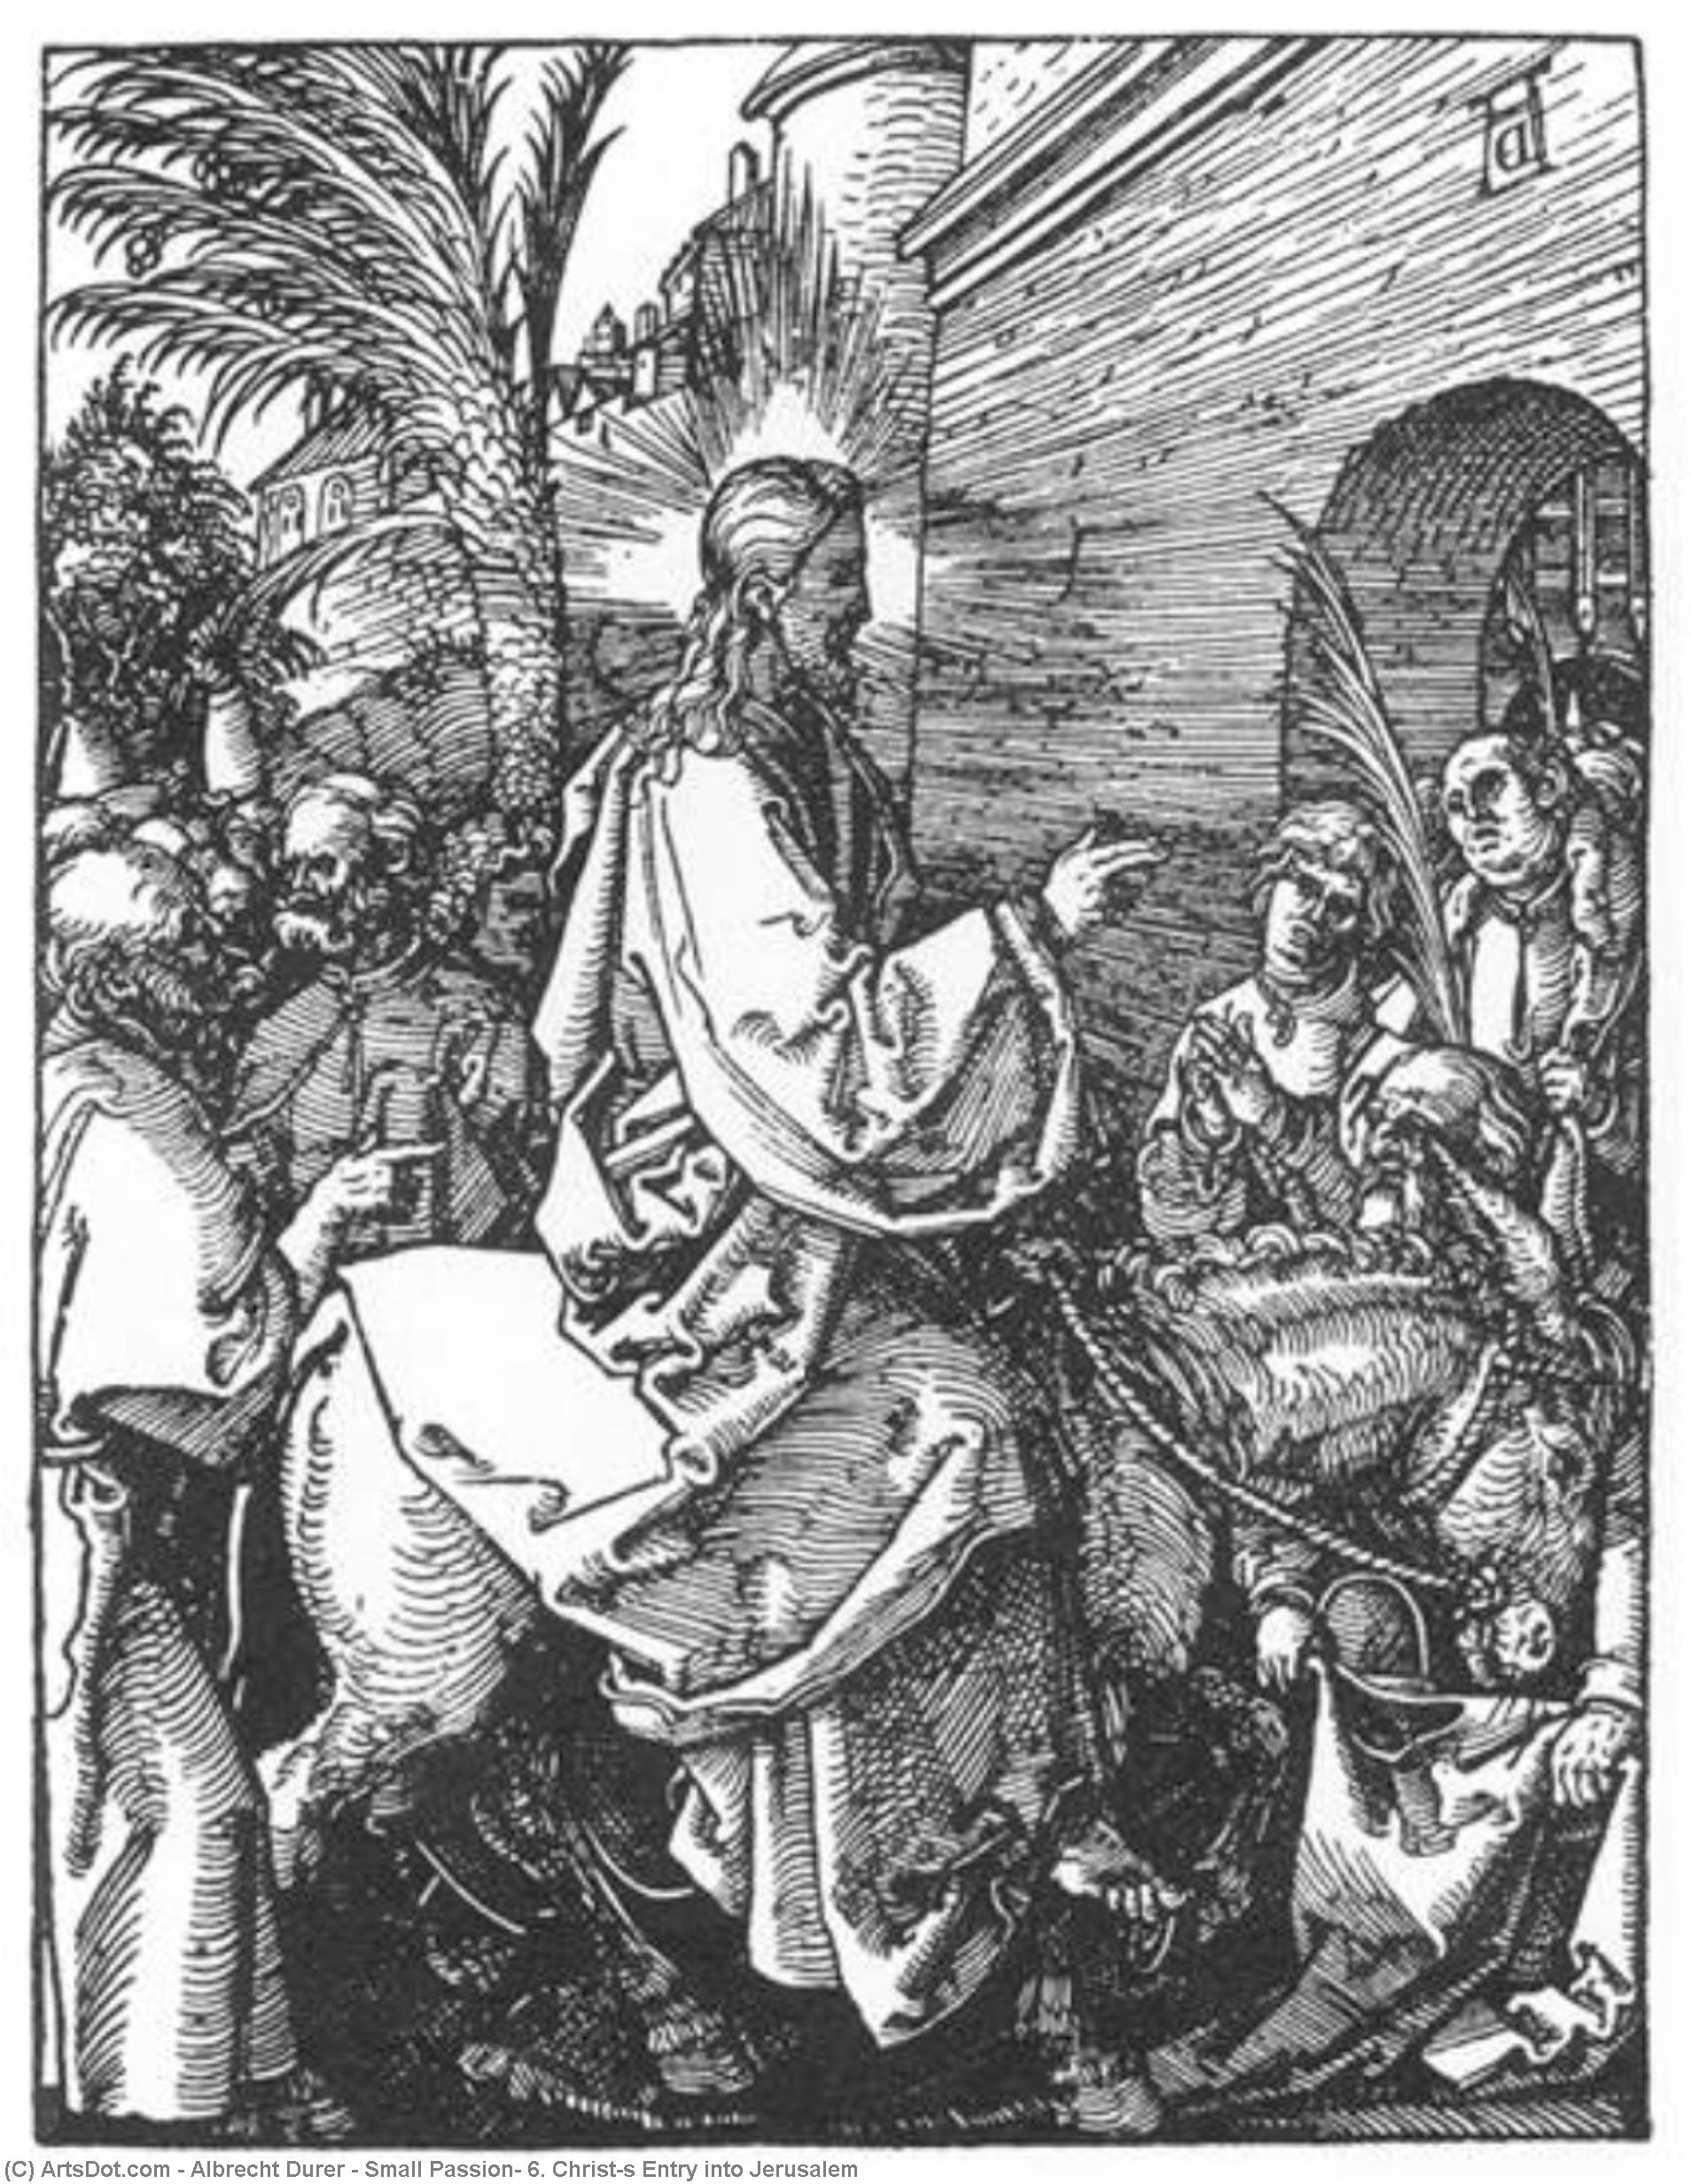 WikiOO.org - Енциклопедия за изящни изкуства - Живопис, Произведения на изкуството Albrecht Durer - Small Passion: 6. Christ's Entry into Jerusalem